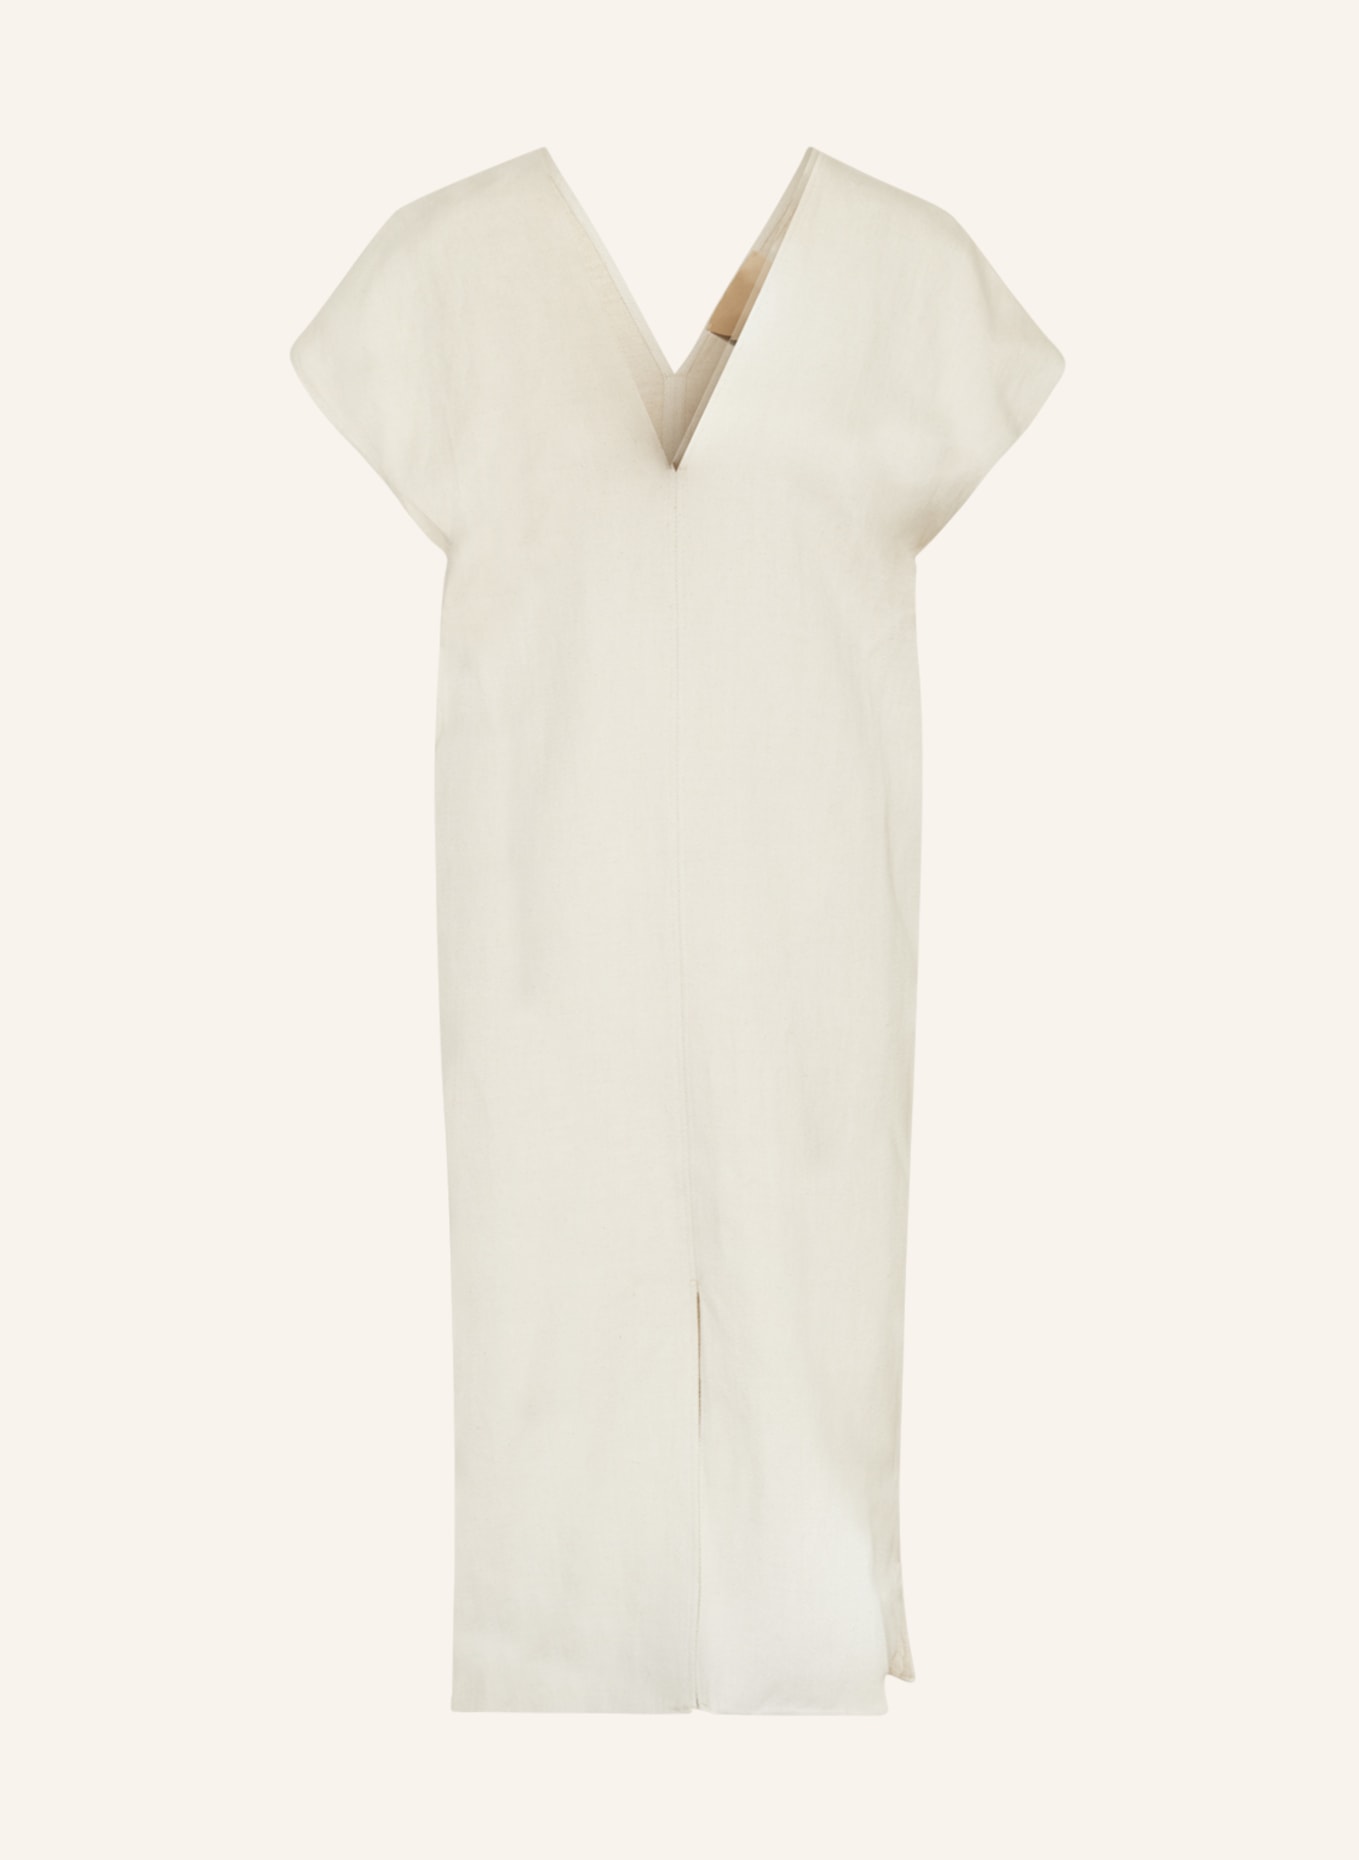 GITTA BANKO Kleid LUNA mit Leinen, Farbe: CREME (Bild 1)